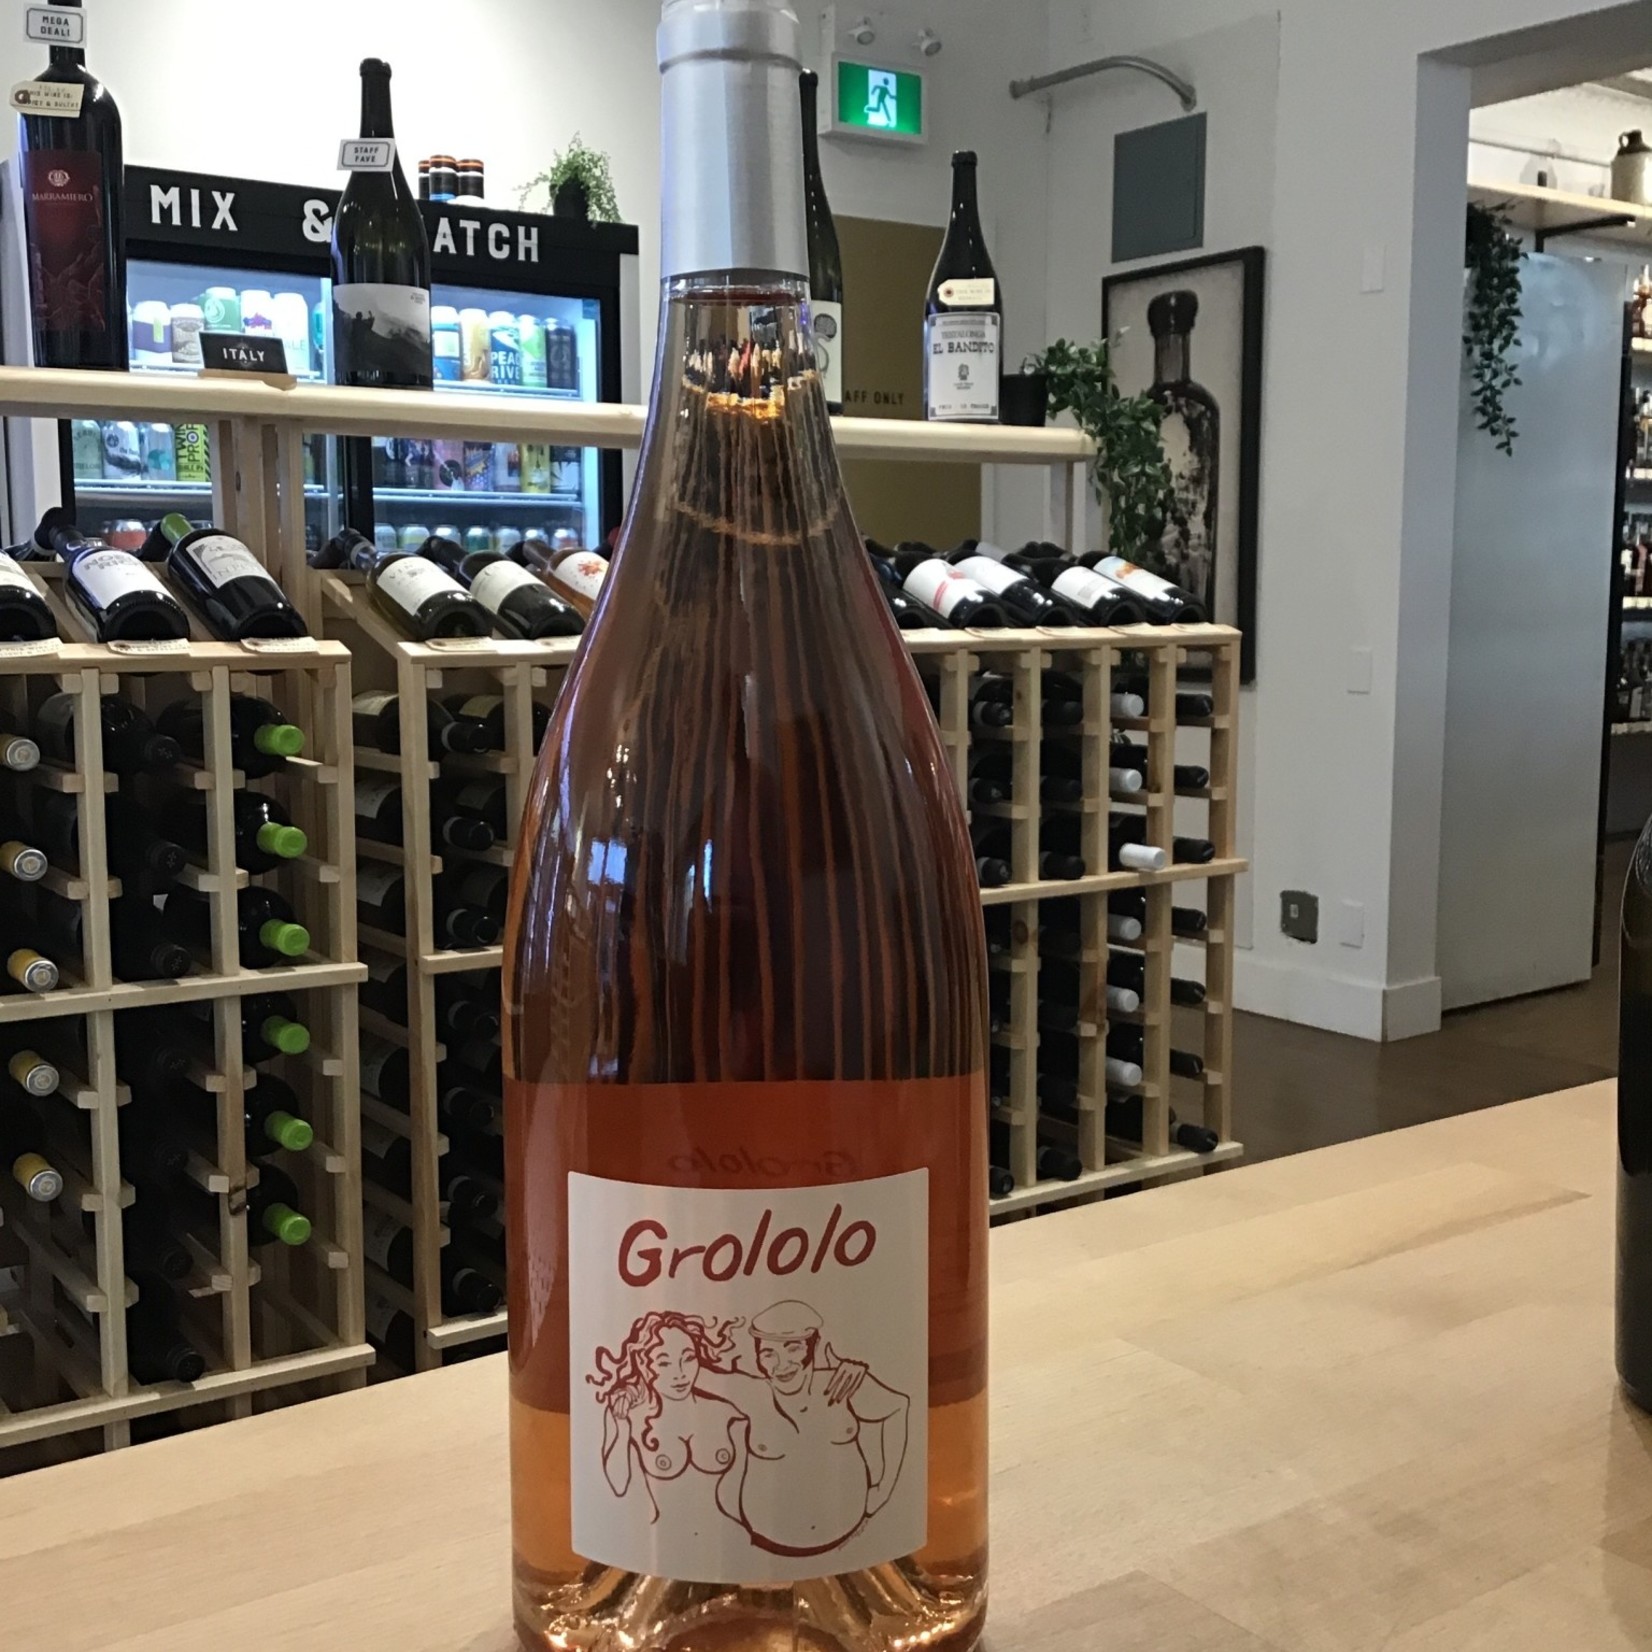 Pithon-Paille, 'Grololo' Rose 1.5L 12.5%